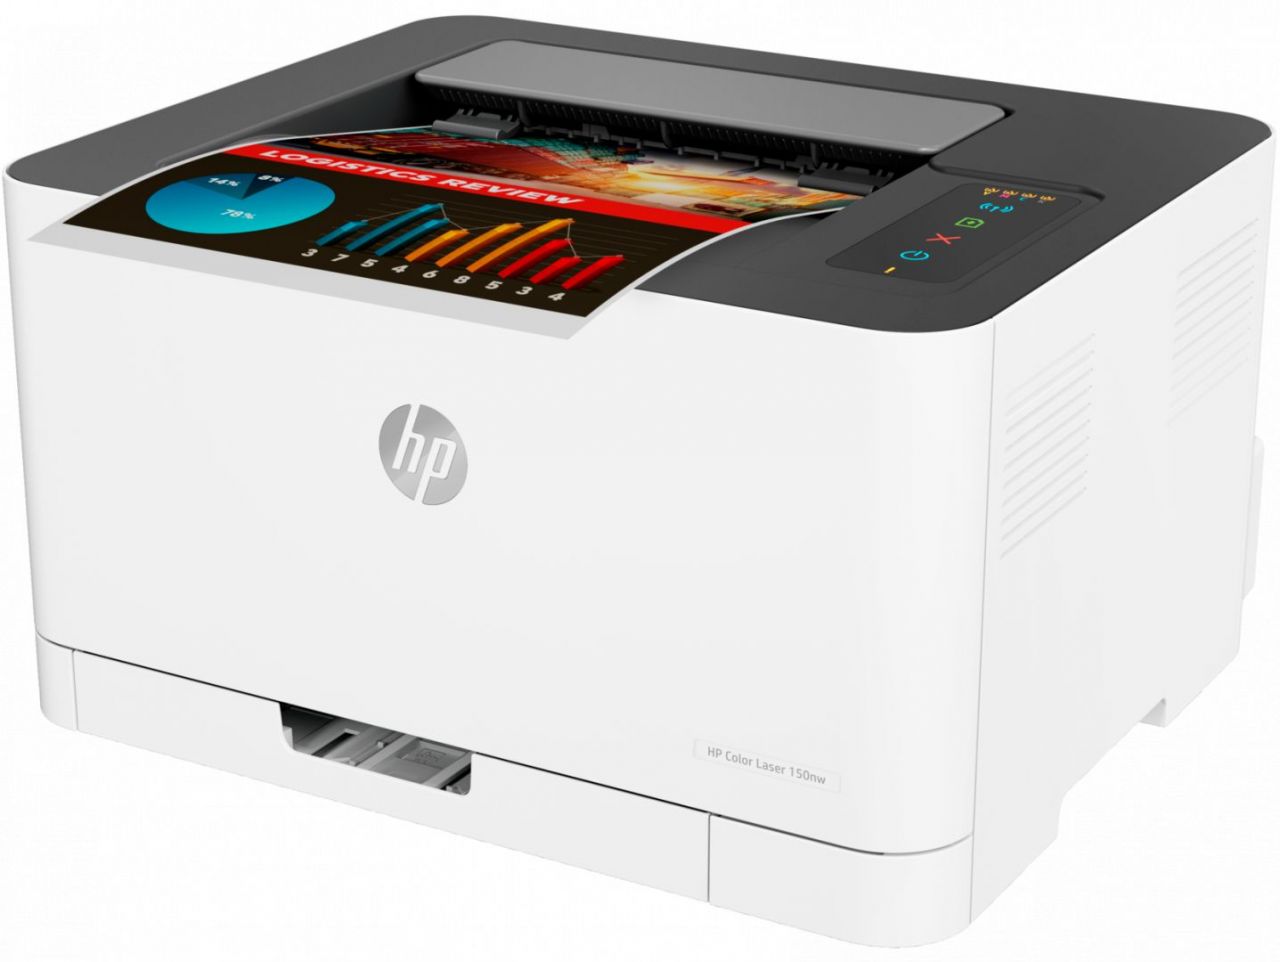 HP Color LaserJet Pro 150nw Wireless Lézernyomtató